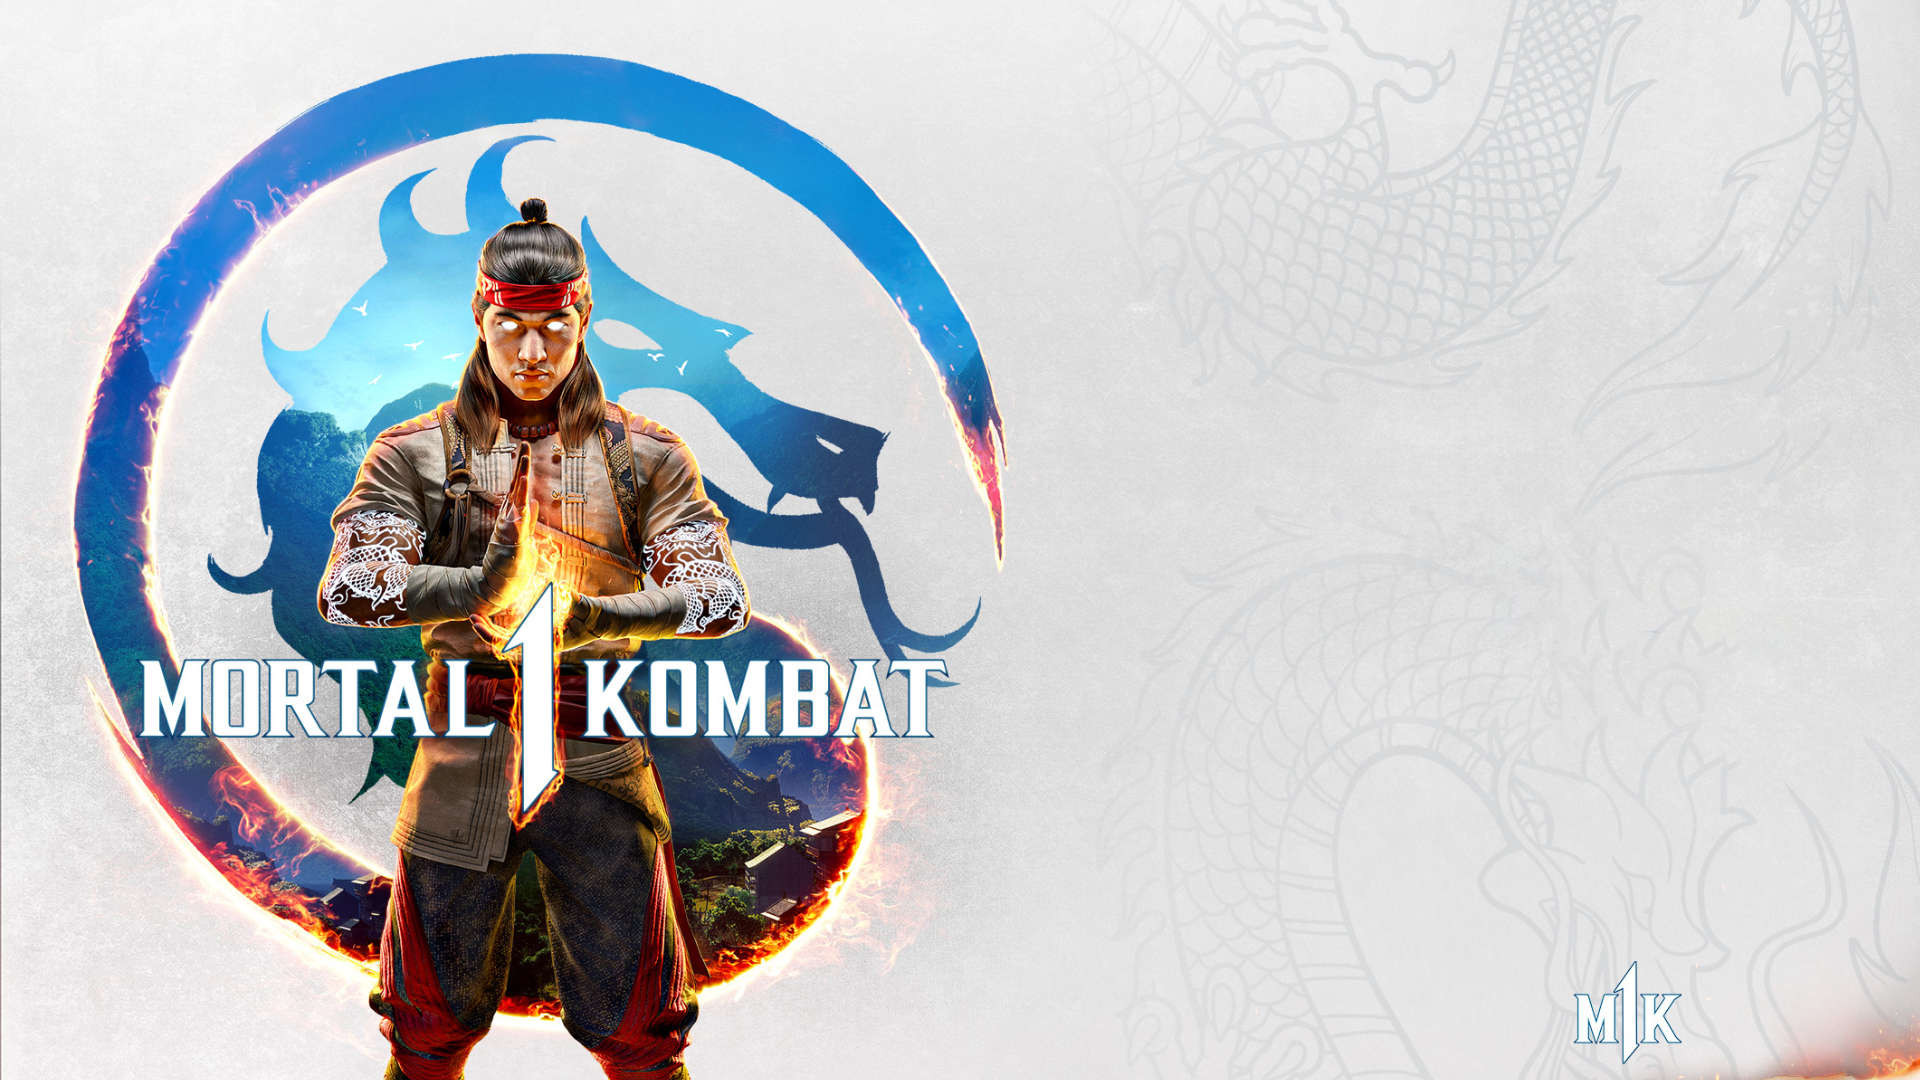 Mortal Kombat 1: Klassiker bekommt ein Reboot spendiert